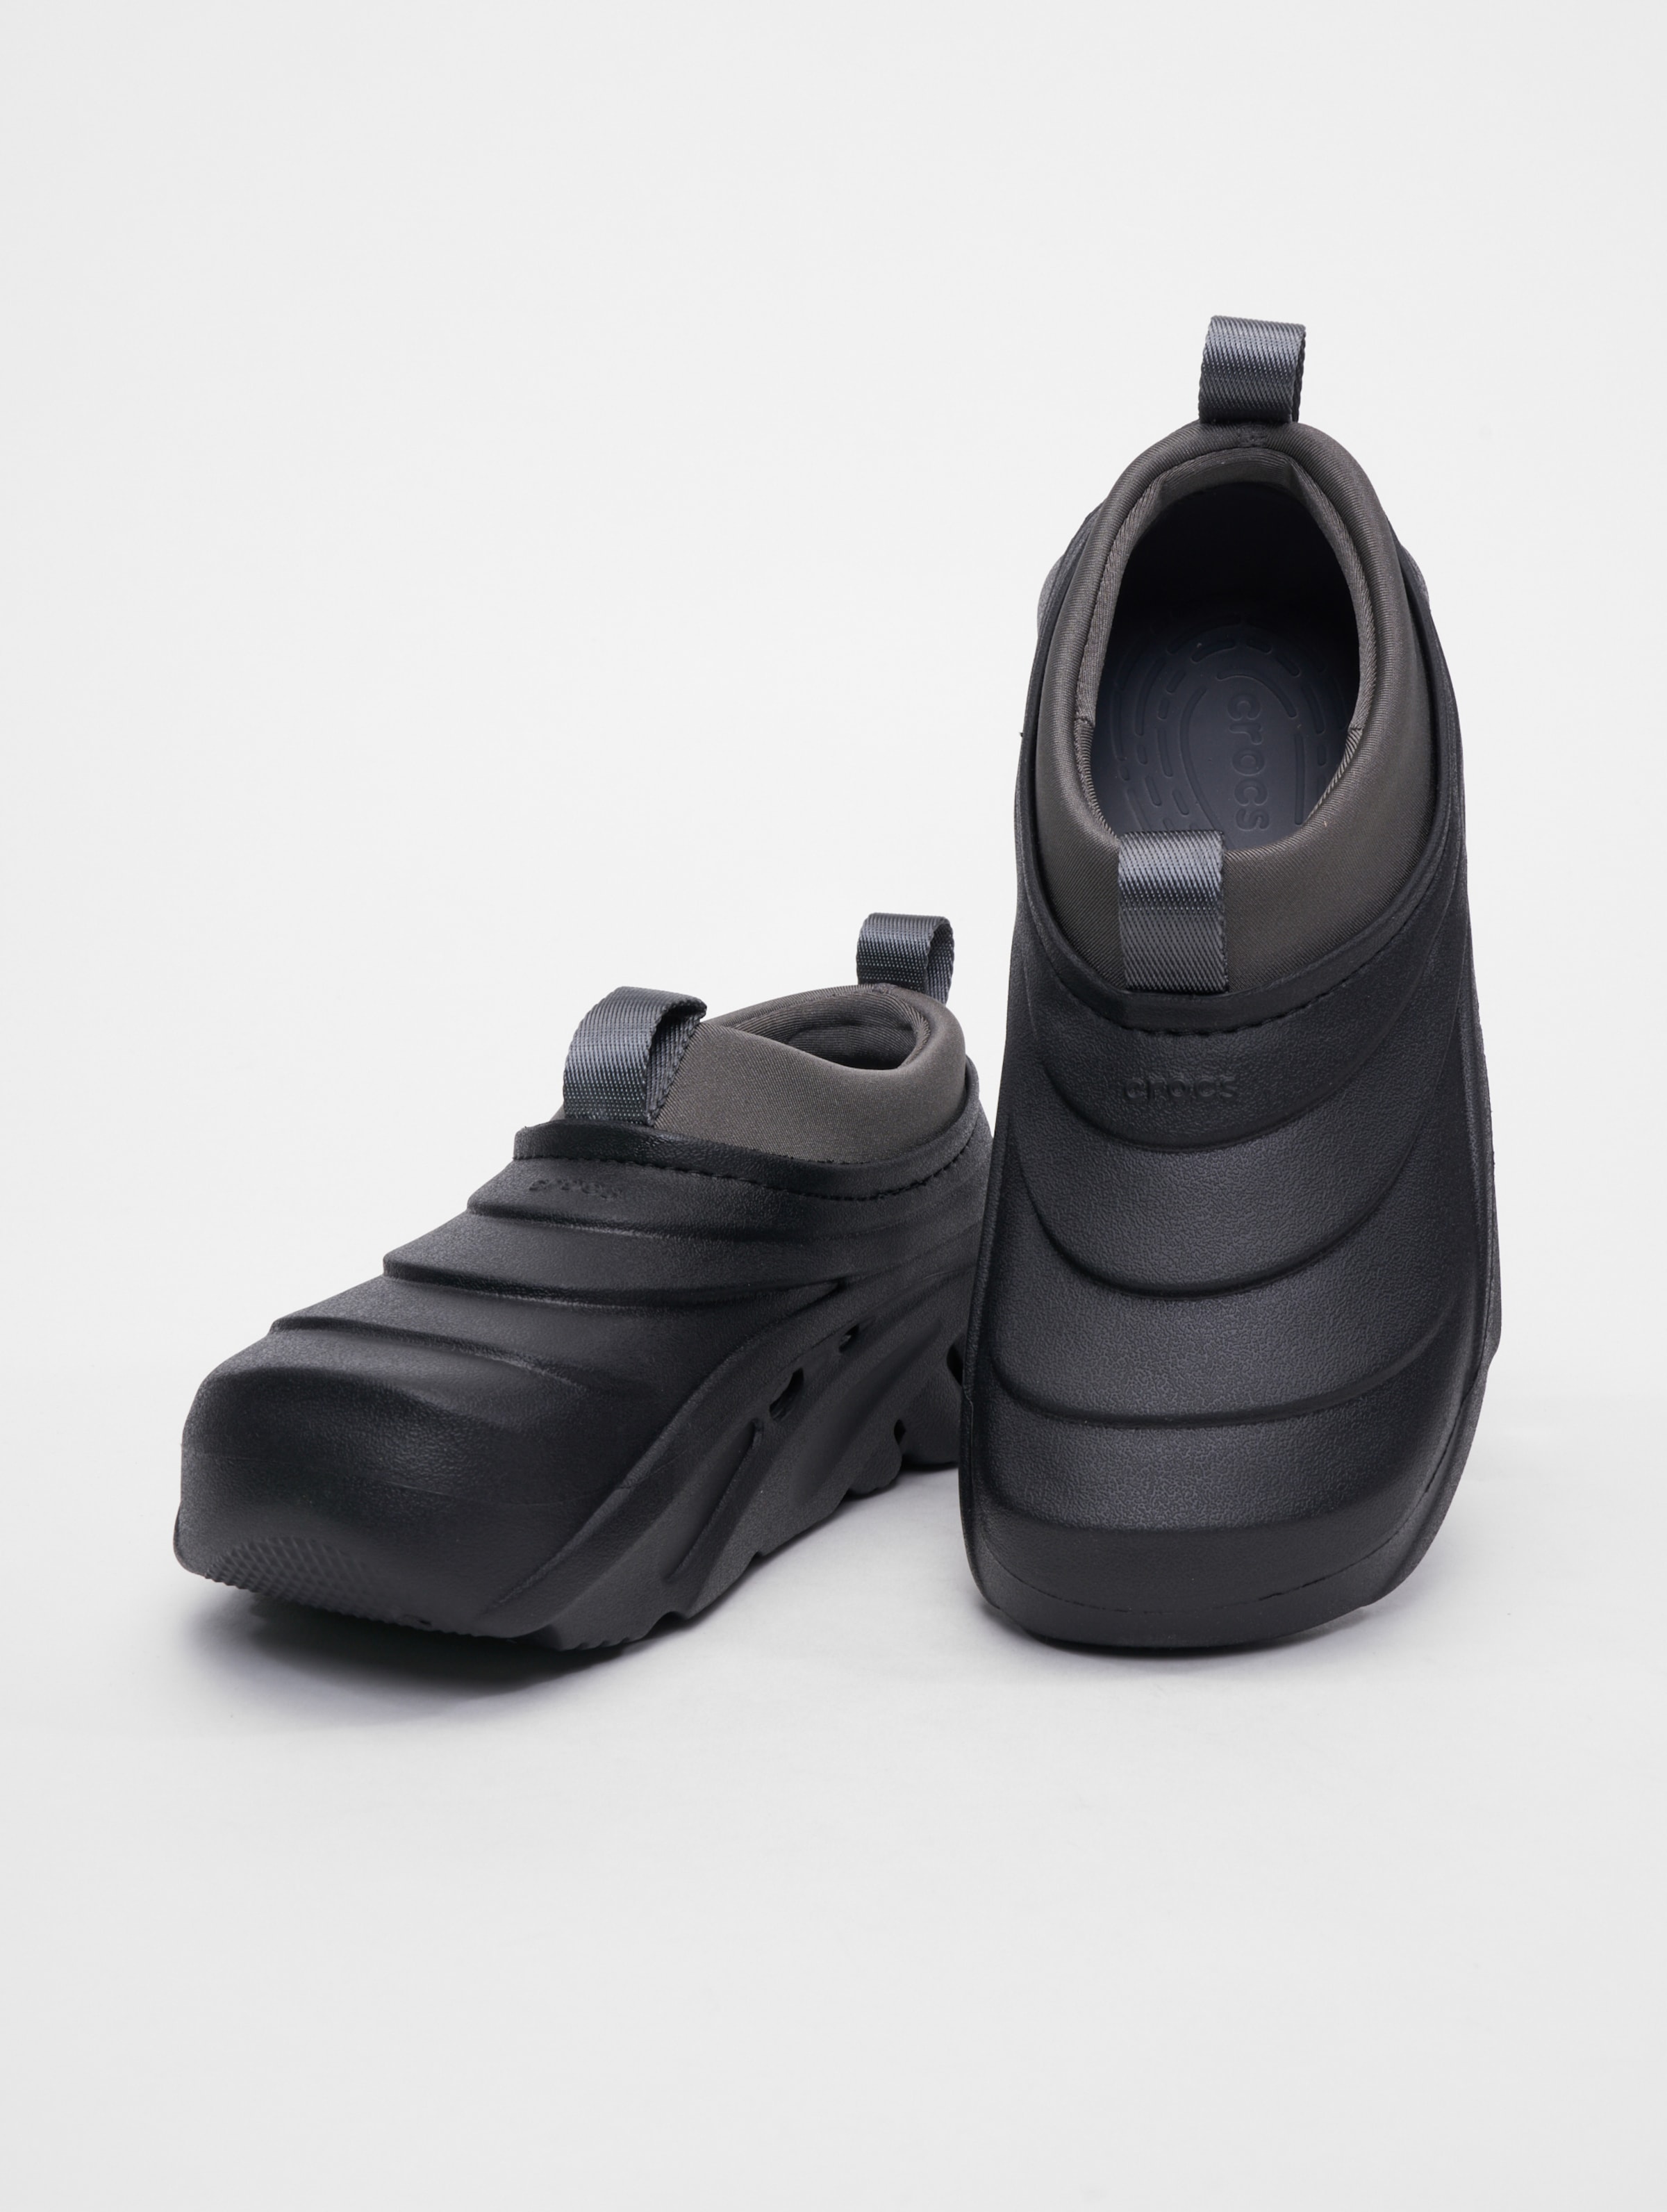 Crocs Echo Storm Sneakers Frauen,Männer,Unisex op kleur zwart, Maat 4546